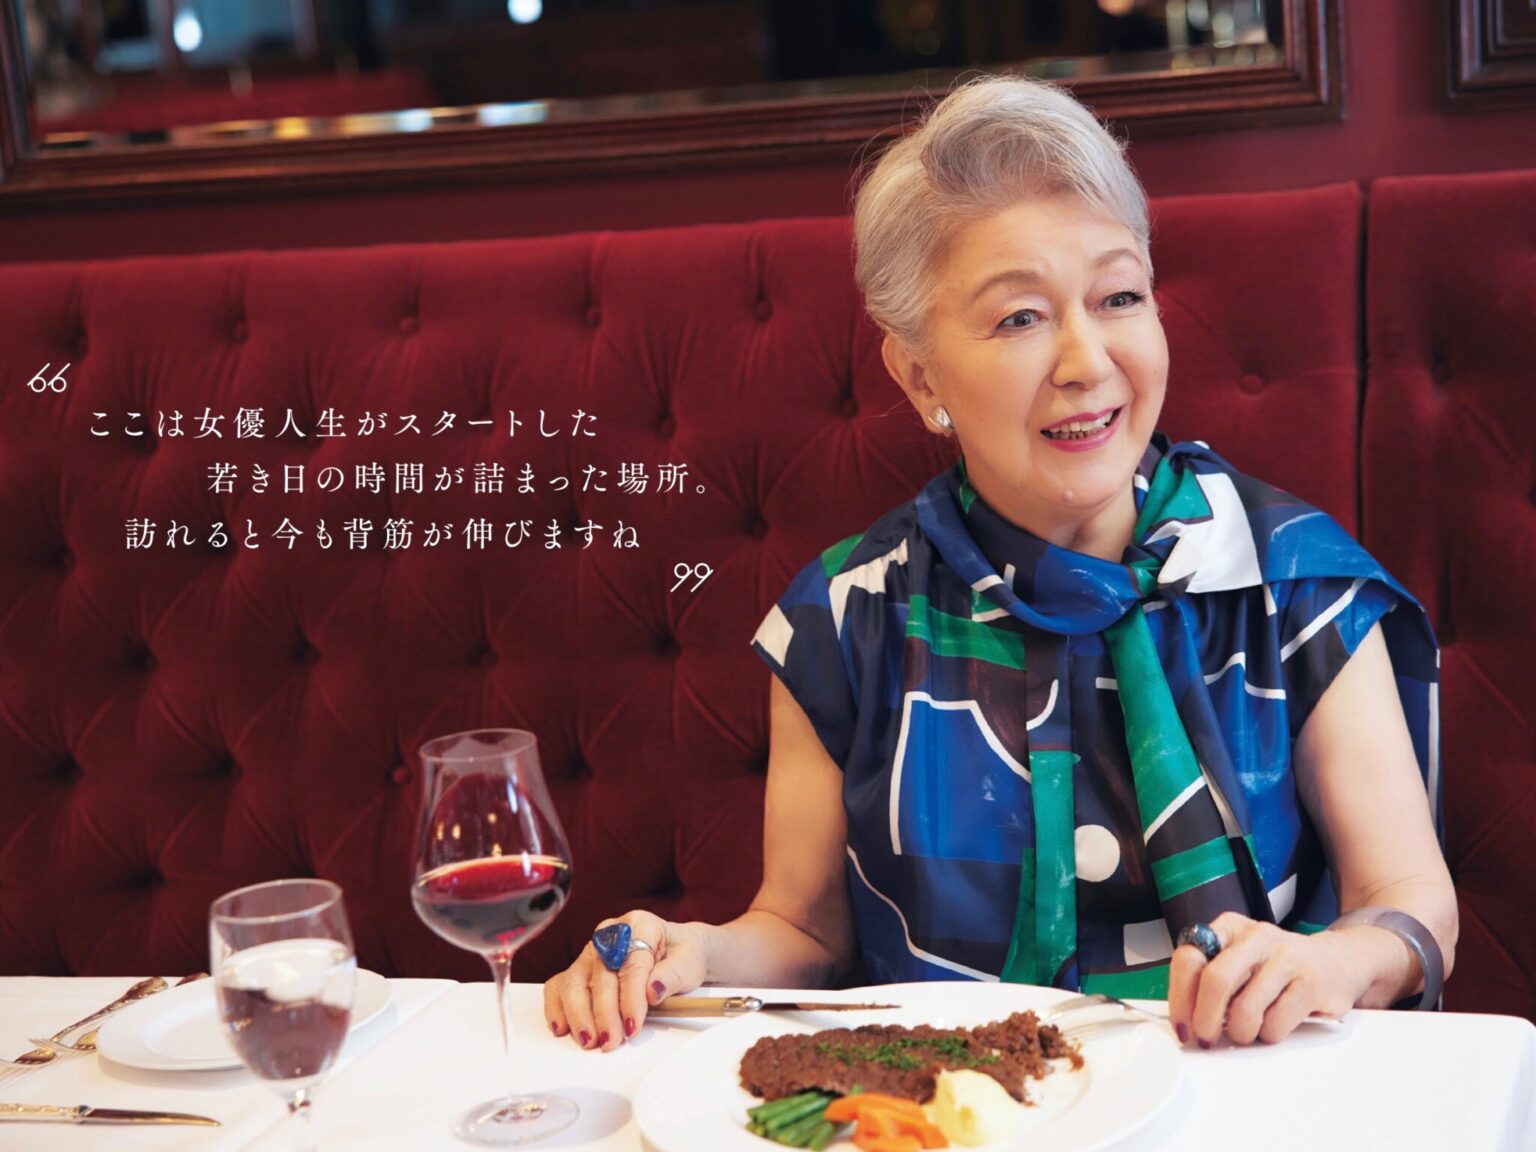 日本を代表する大女優・草笛光子さんと〈帝国ホテル東京〉とは、デビュー当時から深いご縁で結ばれているという。思い出の場所でホテルのこと、銀座の街のこと、そして女優人生について伺いました。